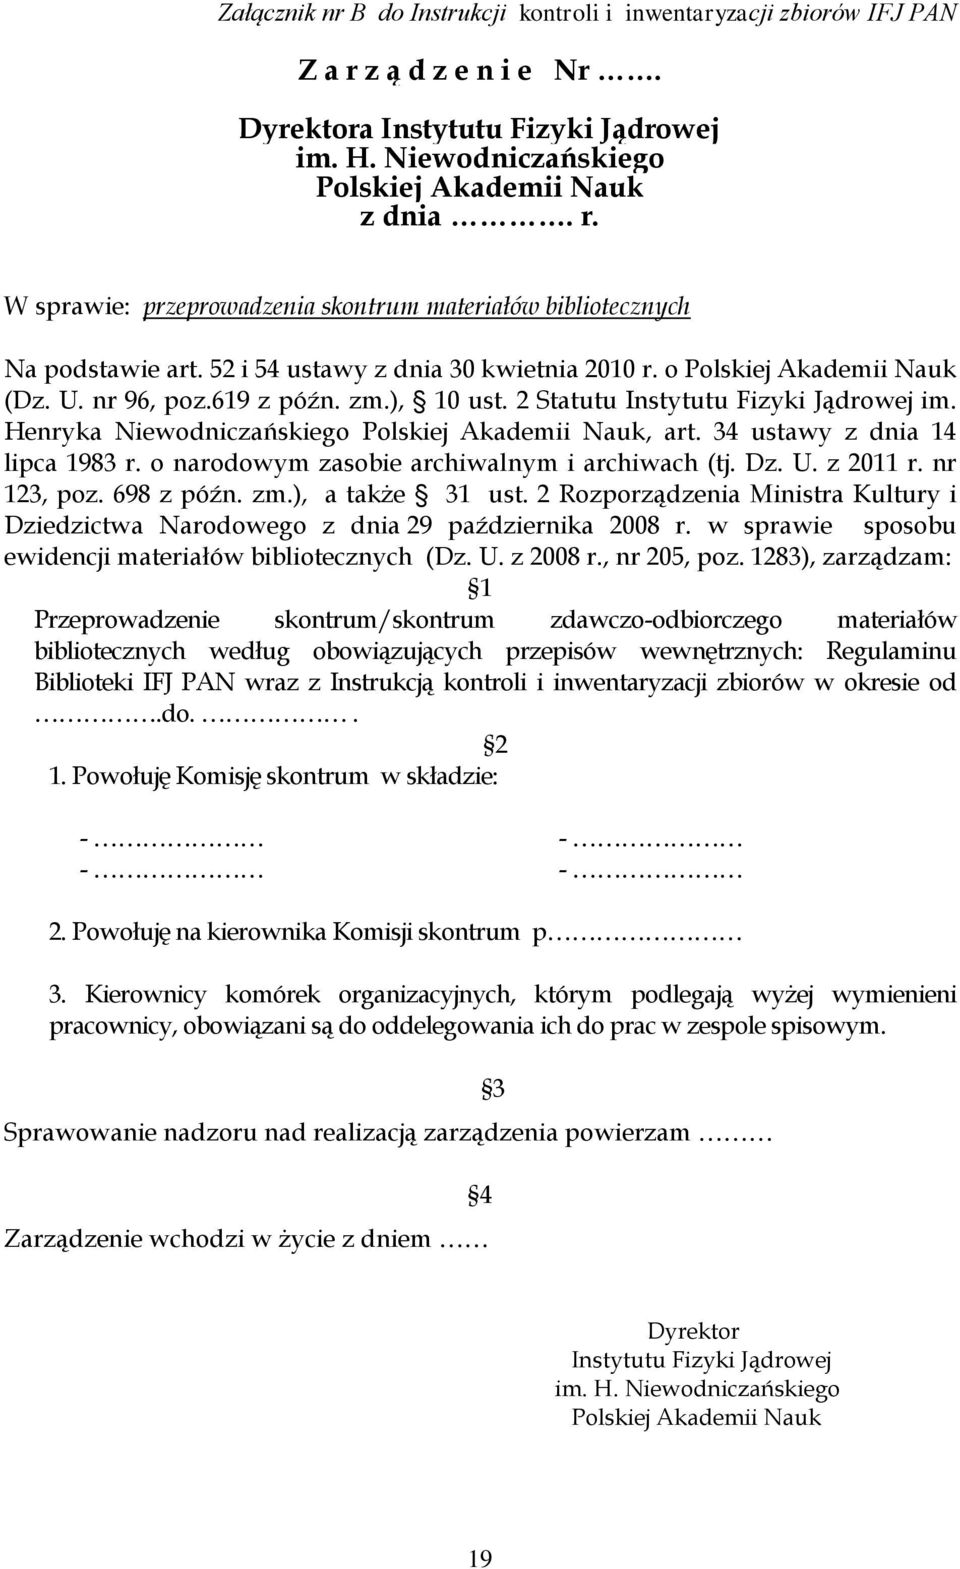 Henryka Niewodniczańskiego Polskiej Akademii Nauk, art. 34 ustawy z dnia 14 lipca 1983 r. o narodowym zasobie archiwalnym i archiwach (tj. Dz. U. z 2011 r. nr 123, poz. 698 z późn. zm.